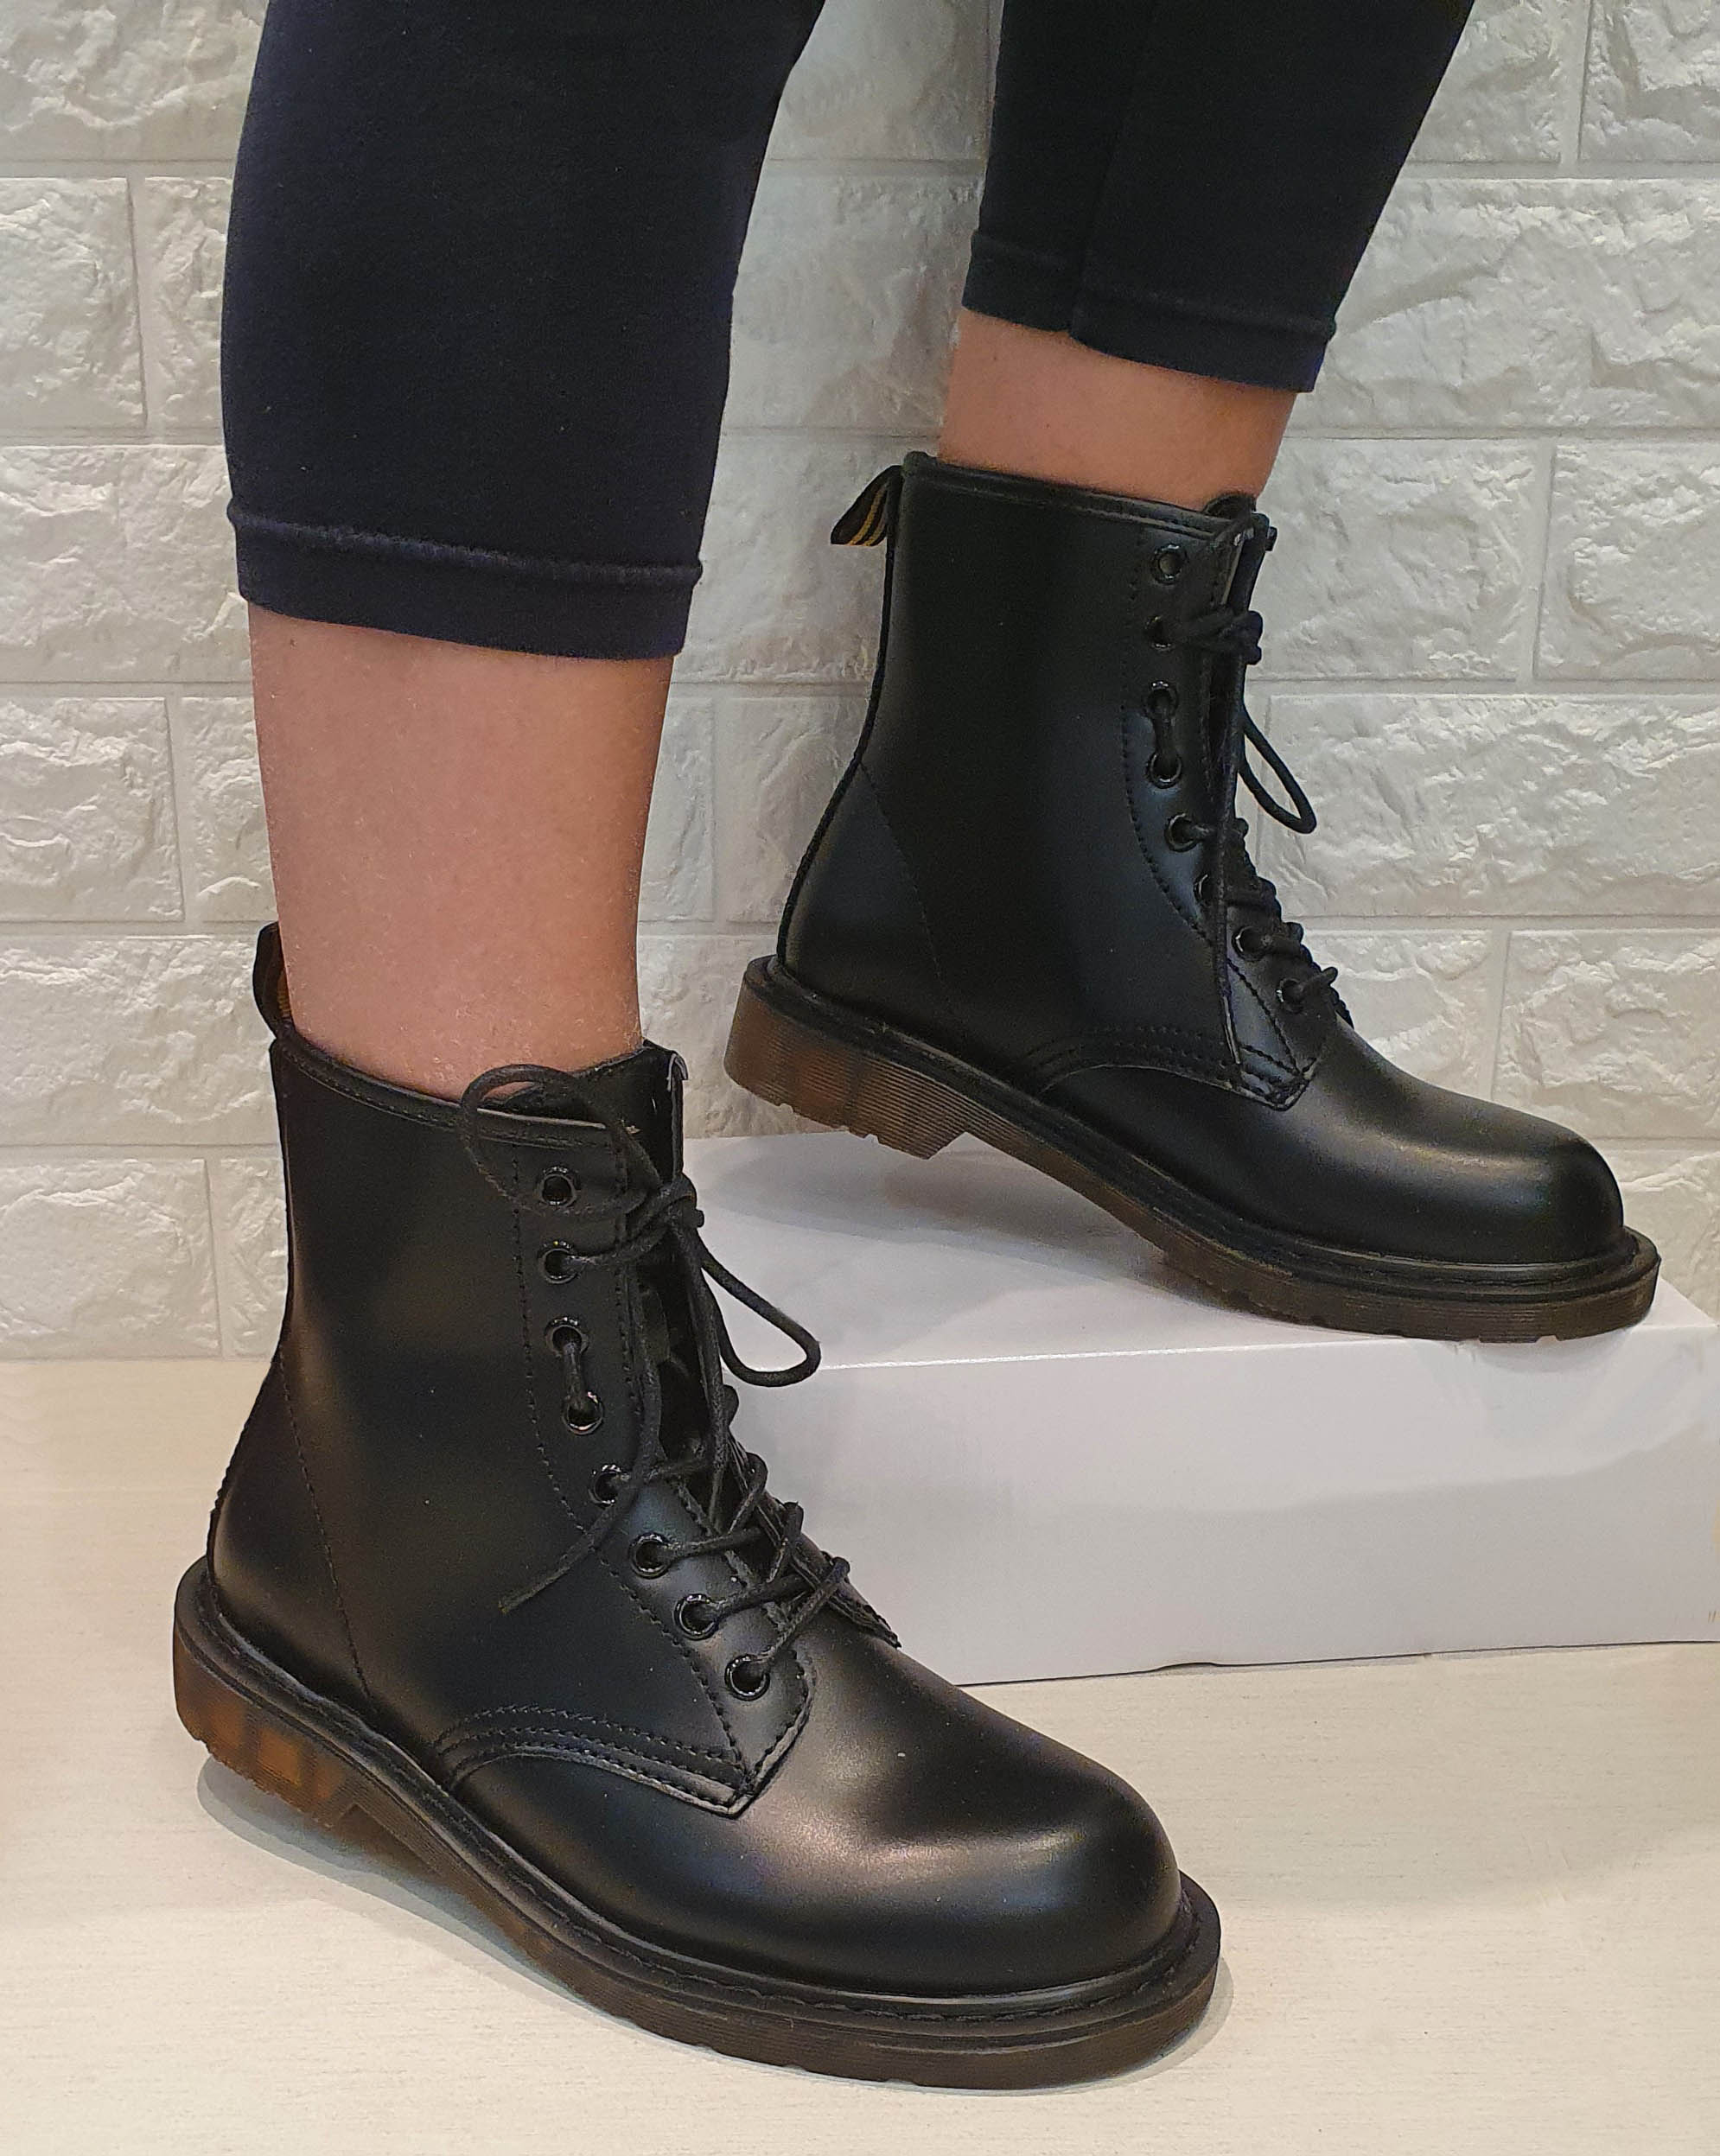 anfibi donna con lacci stivali scarpe scarponcini neri stivaletti alti militari